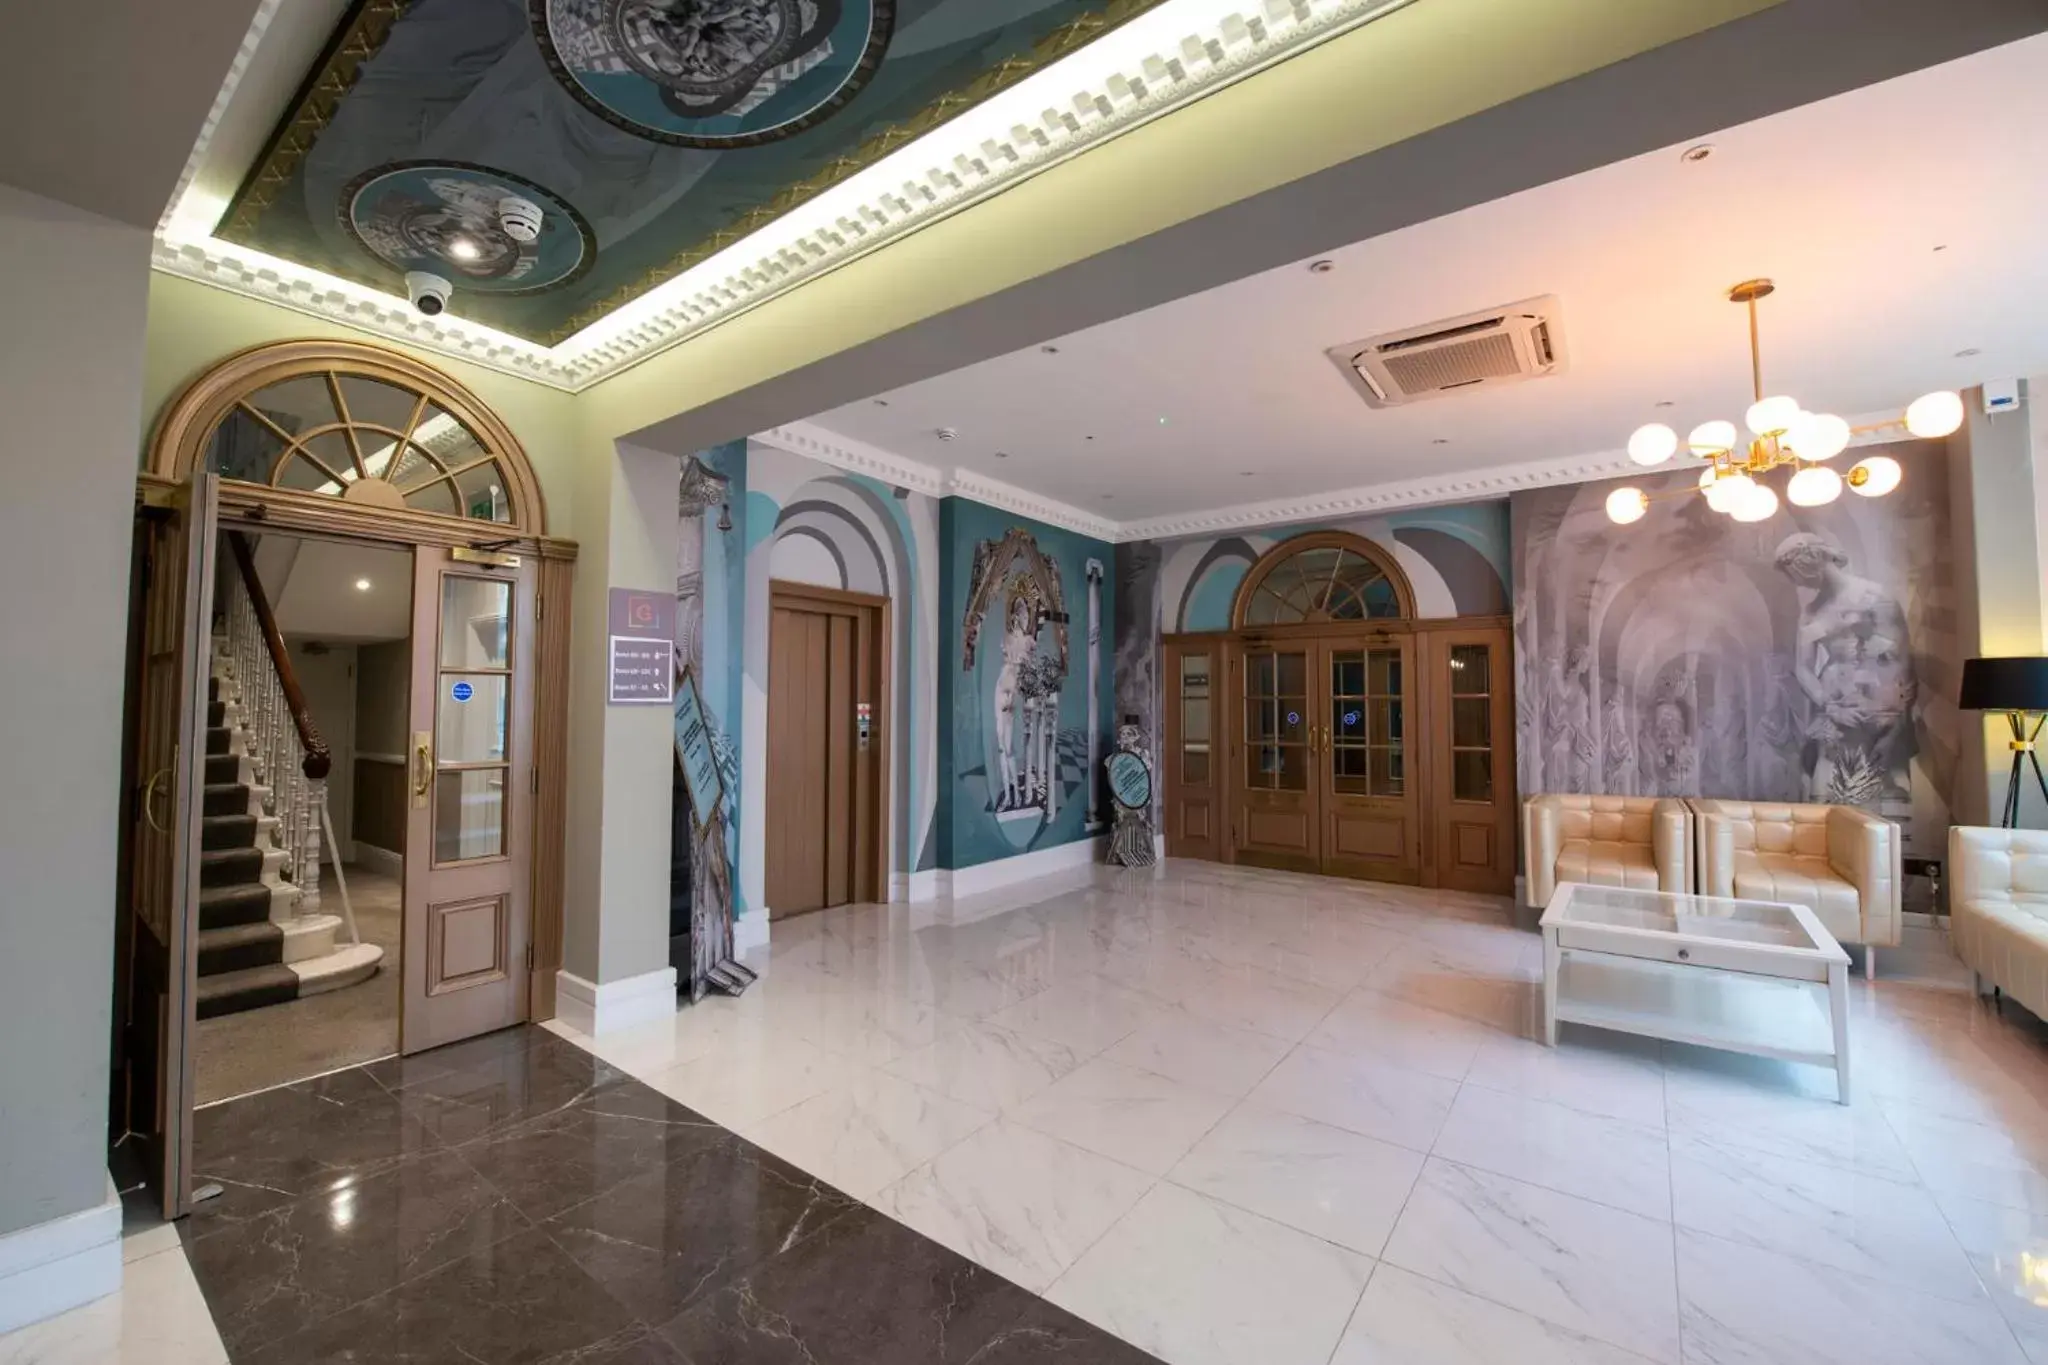 Lobby or reception in Gainsborough Hotel